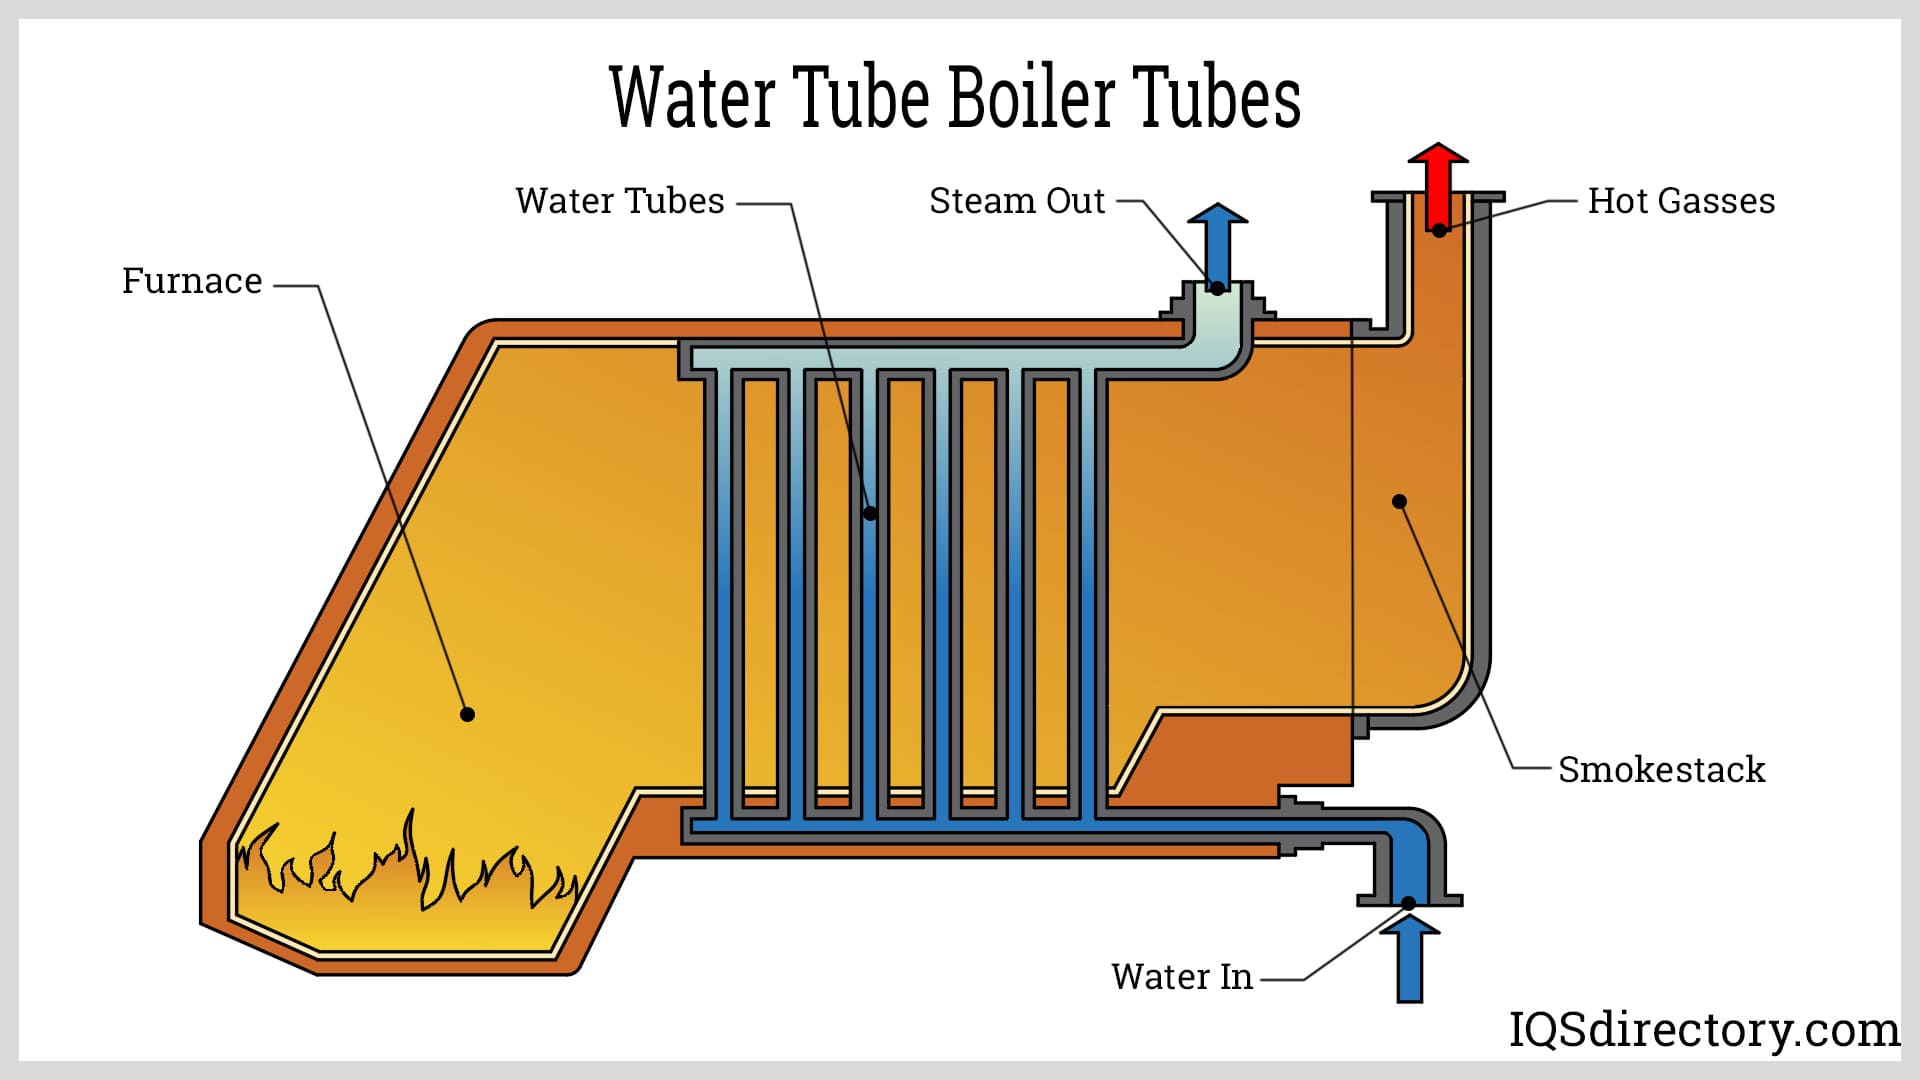 Water Tube Boiler Tubes